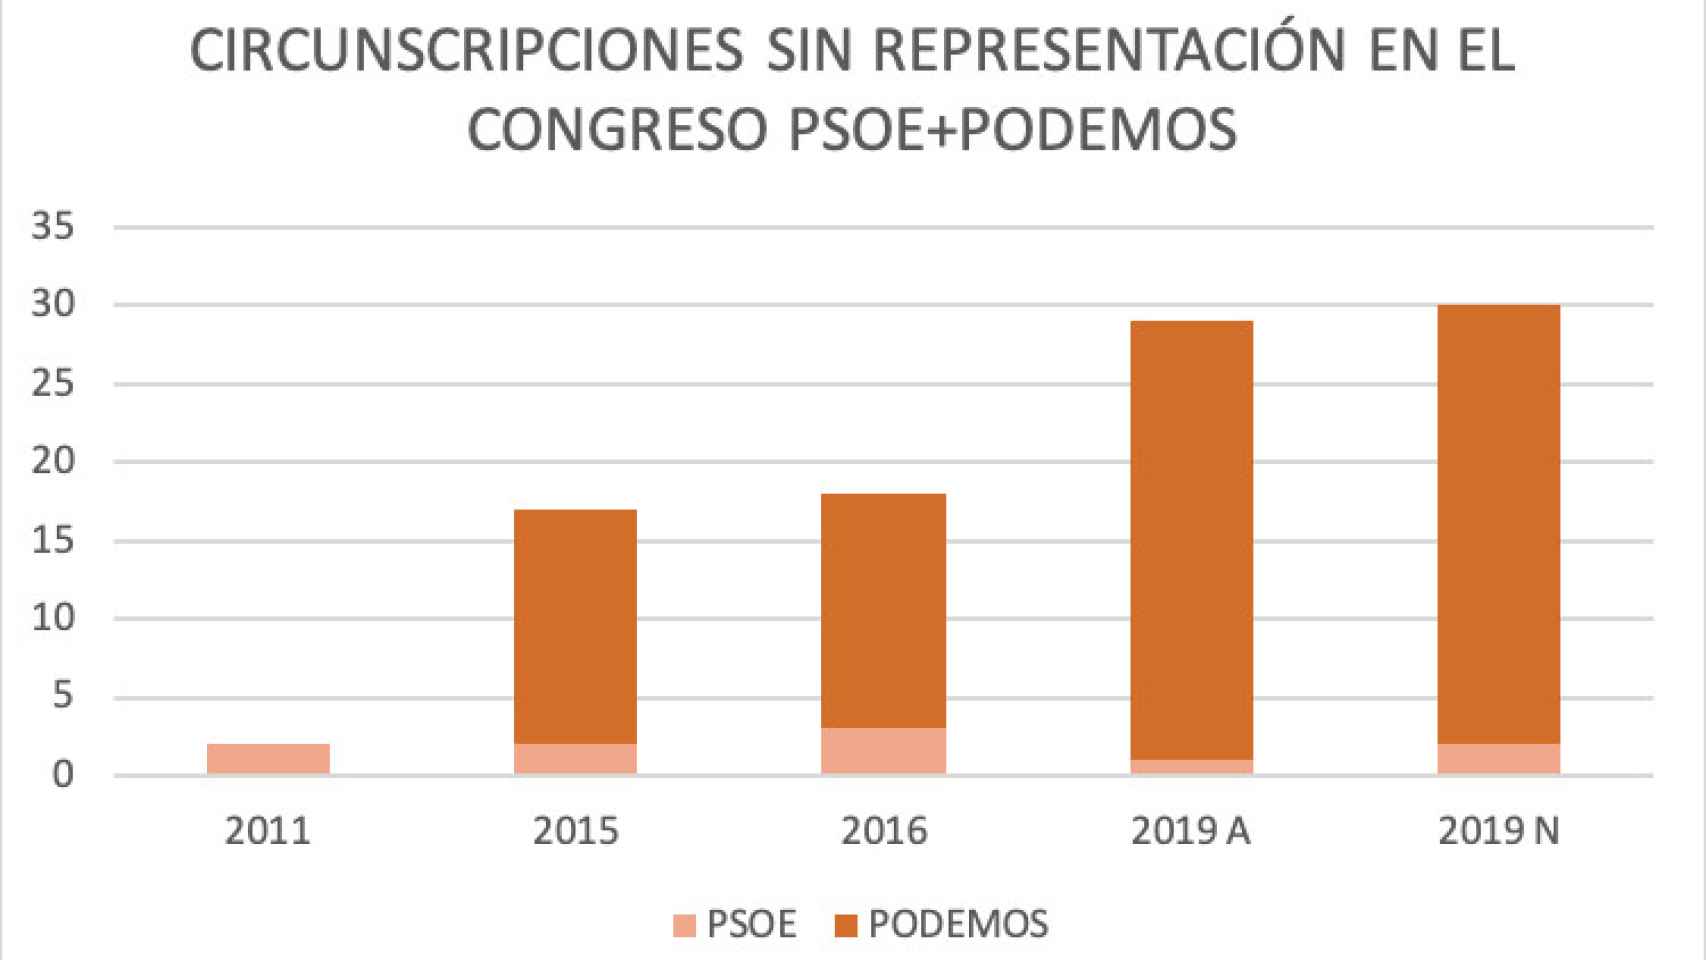 Circunscripciones sin representación PSOE + Podemos entre 2011 y 2019.